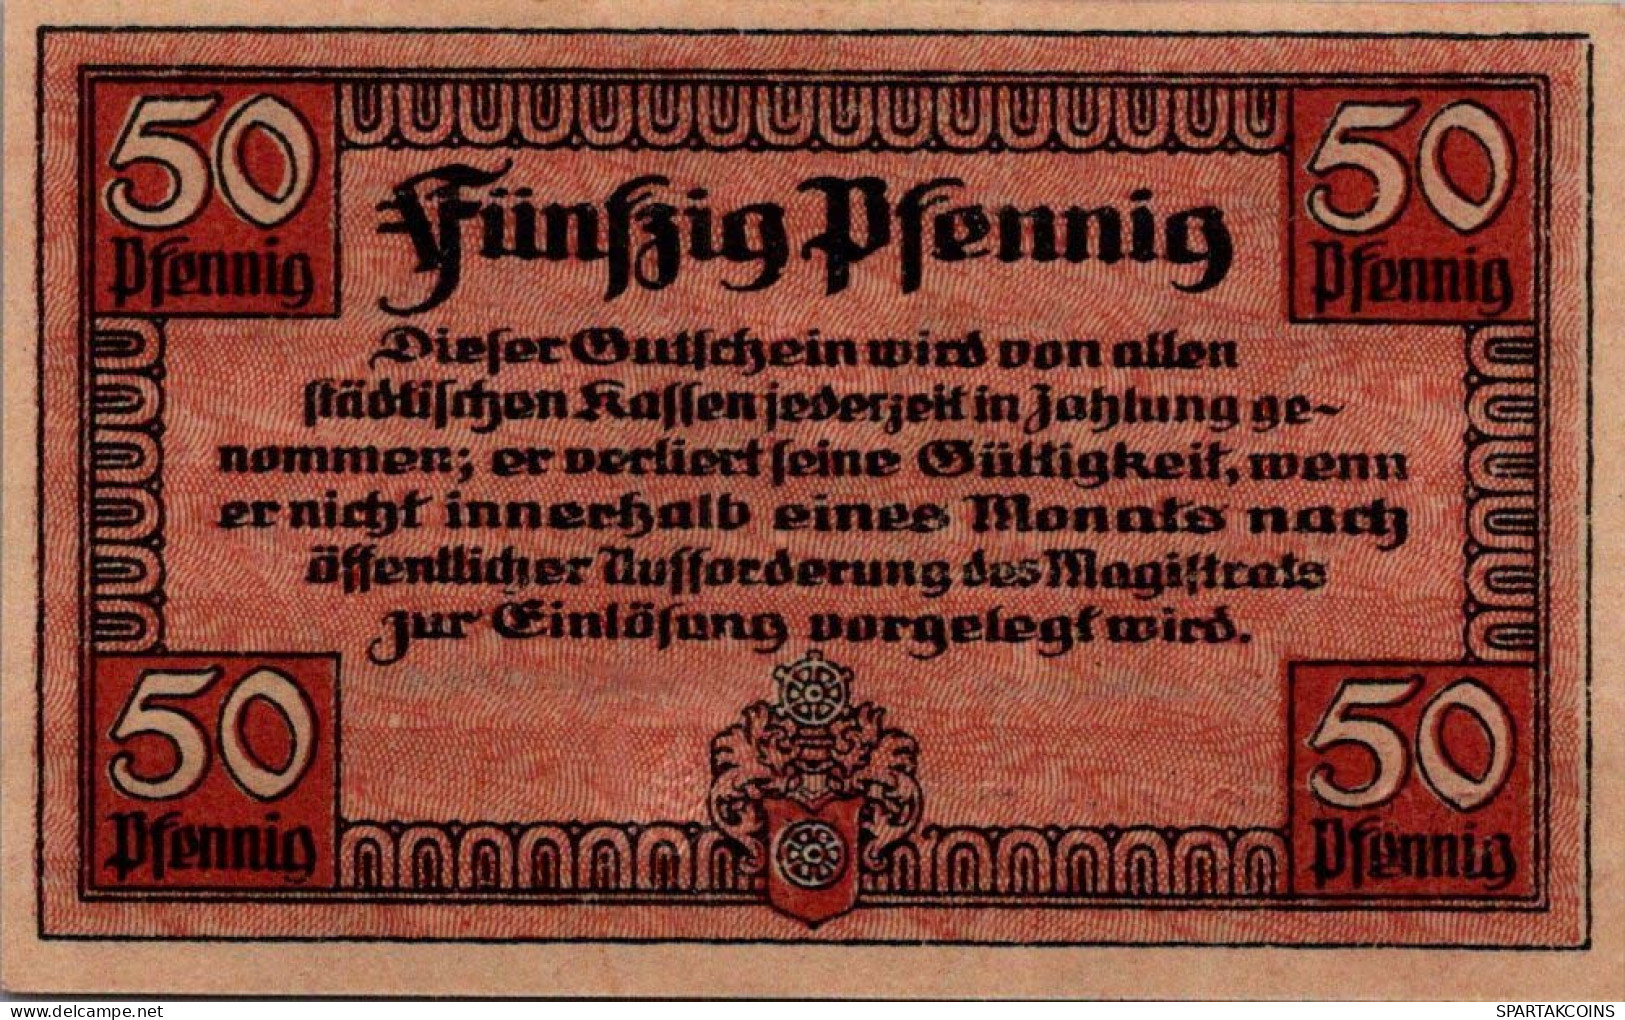 50 PFENNIG 1918 Stadt ERFURT Saxony UNC DEUTSCHLAND Notgeld Banknote #PH818 - [11] Emissions Locales